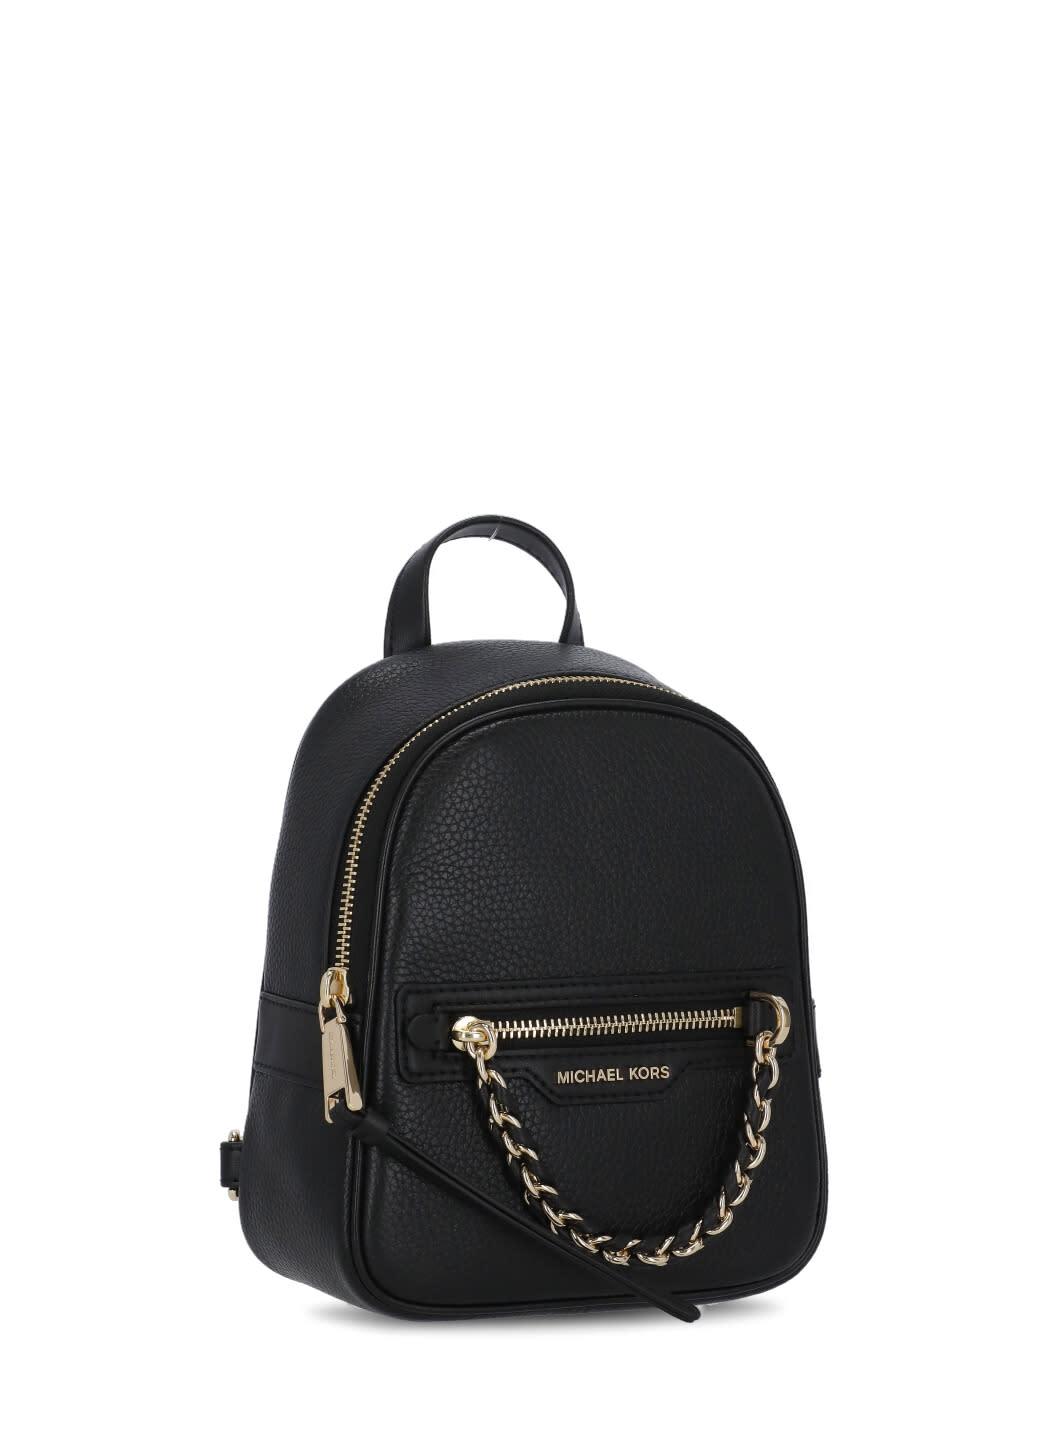 Kipling puck Extra small handbag convertible to backpack #pink | LINE  SHOPPING